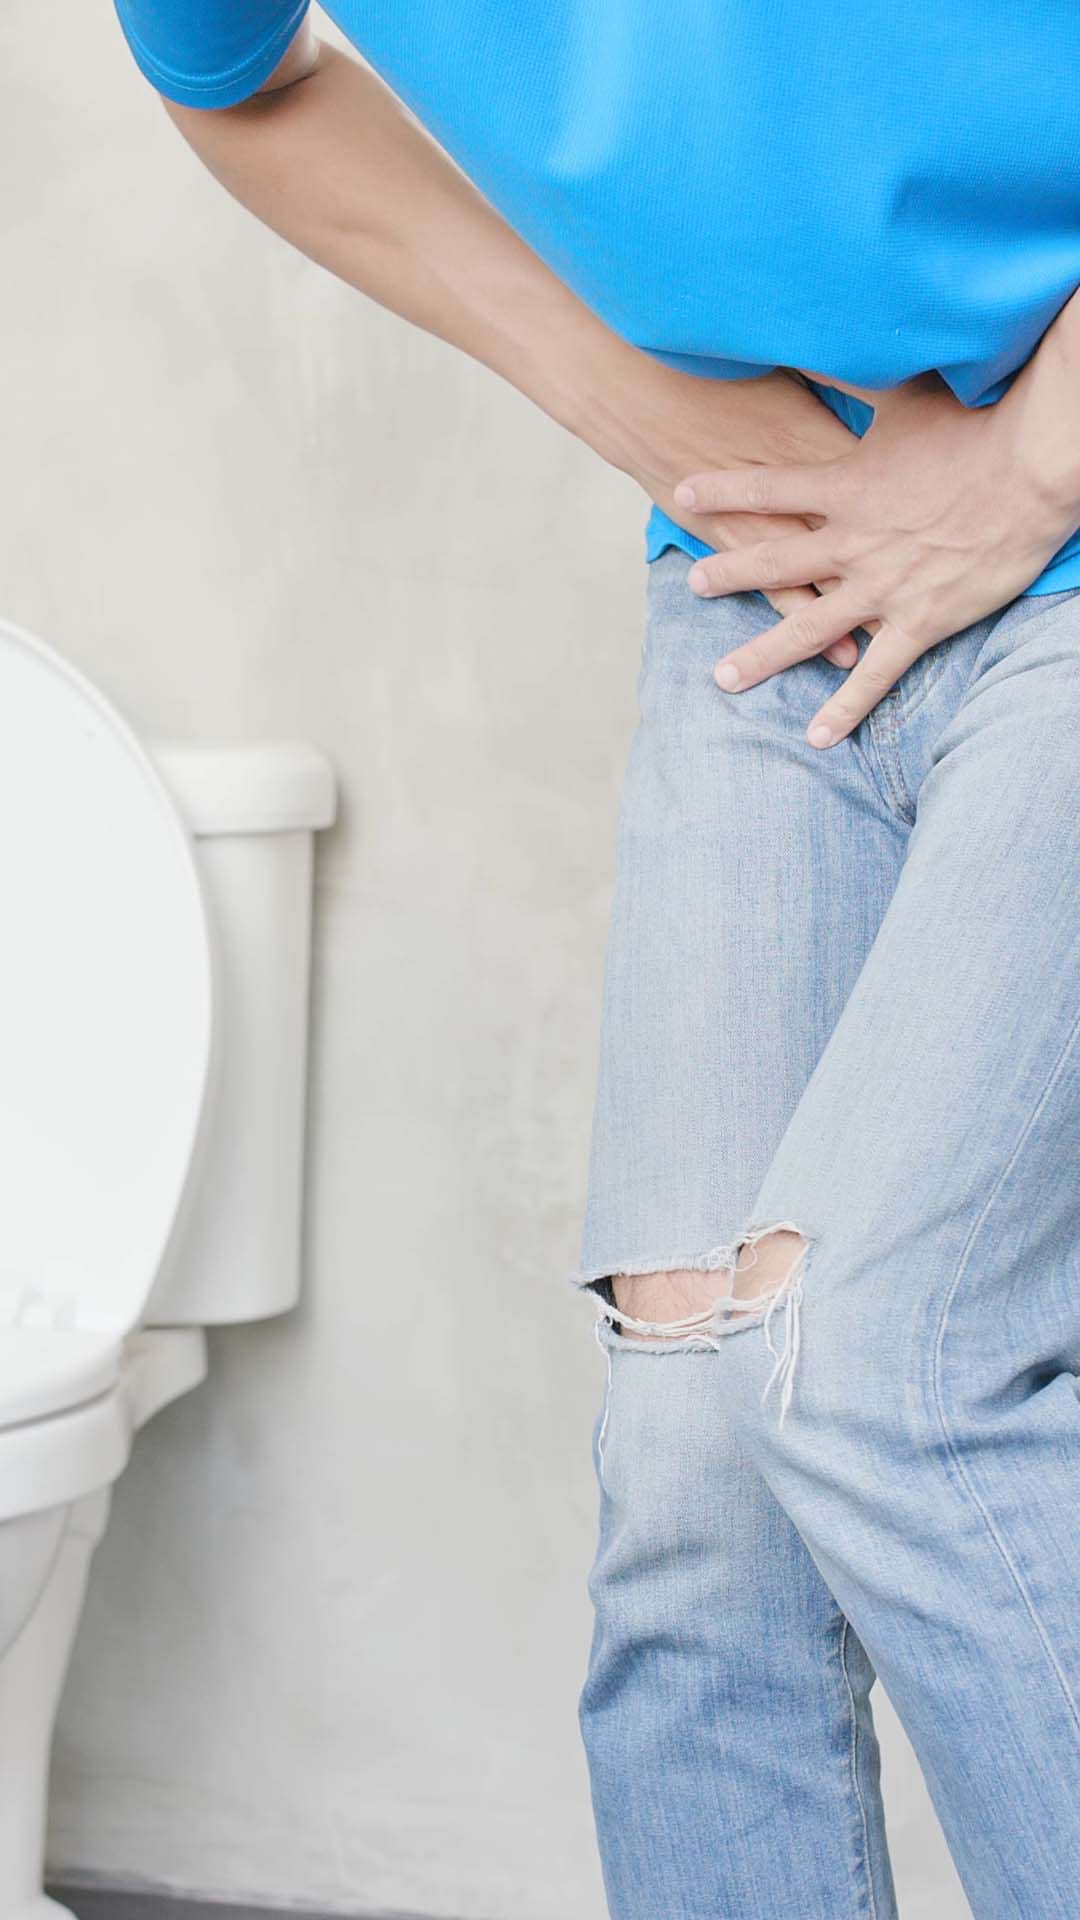 urinare frecventă la bărbați cu tratament pentru durere